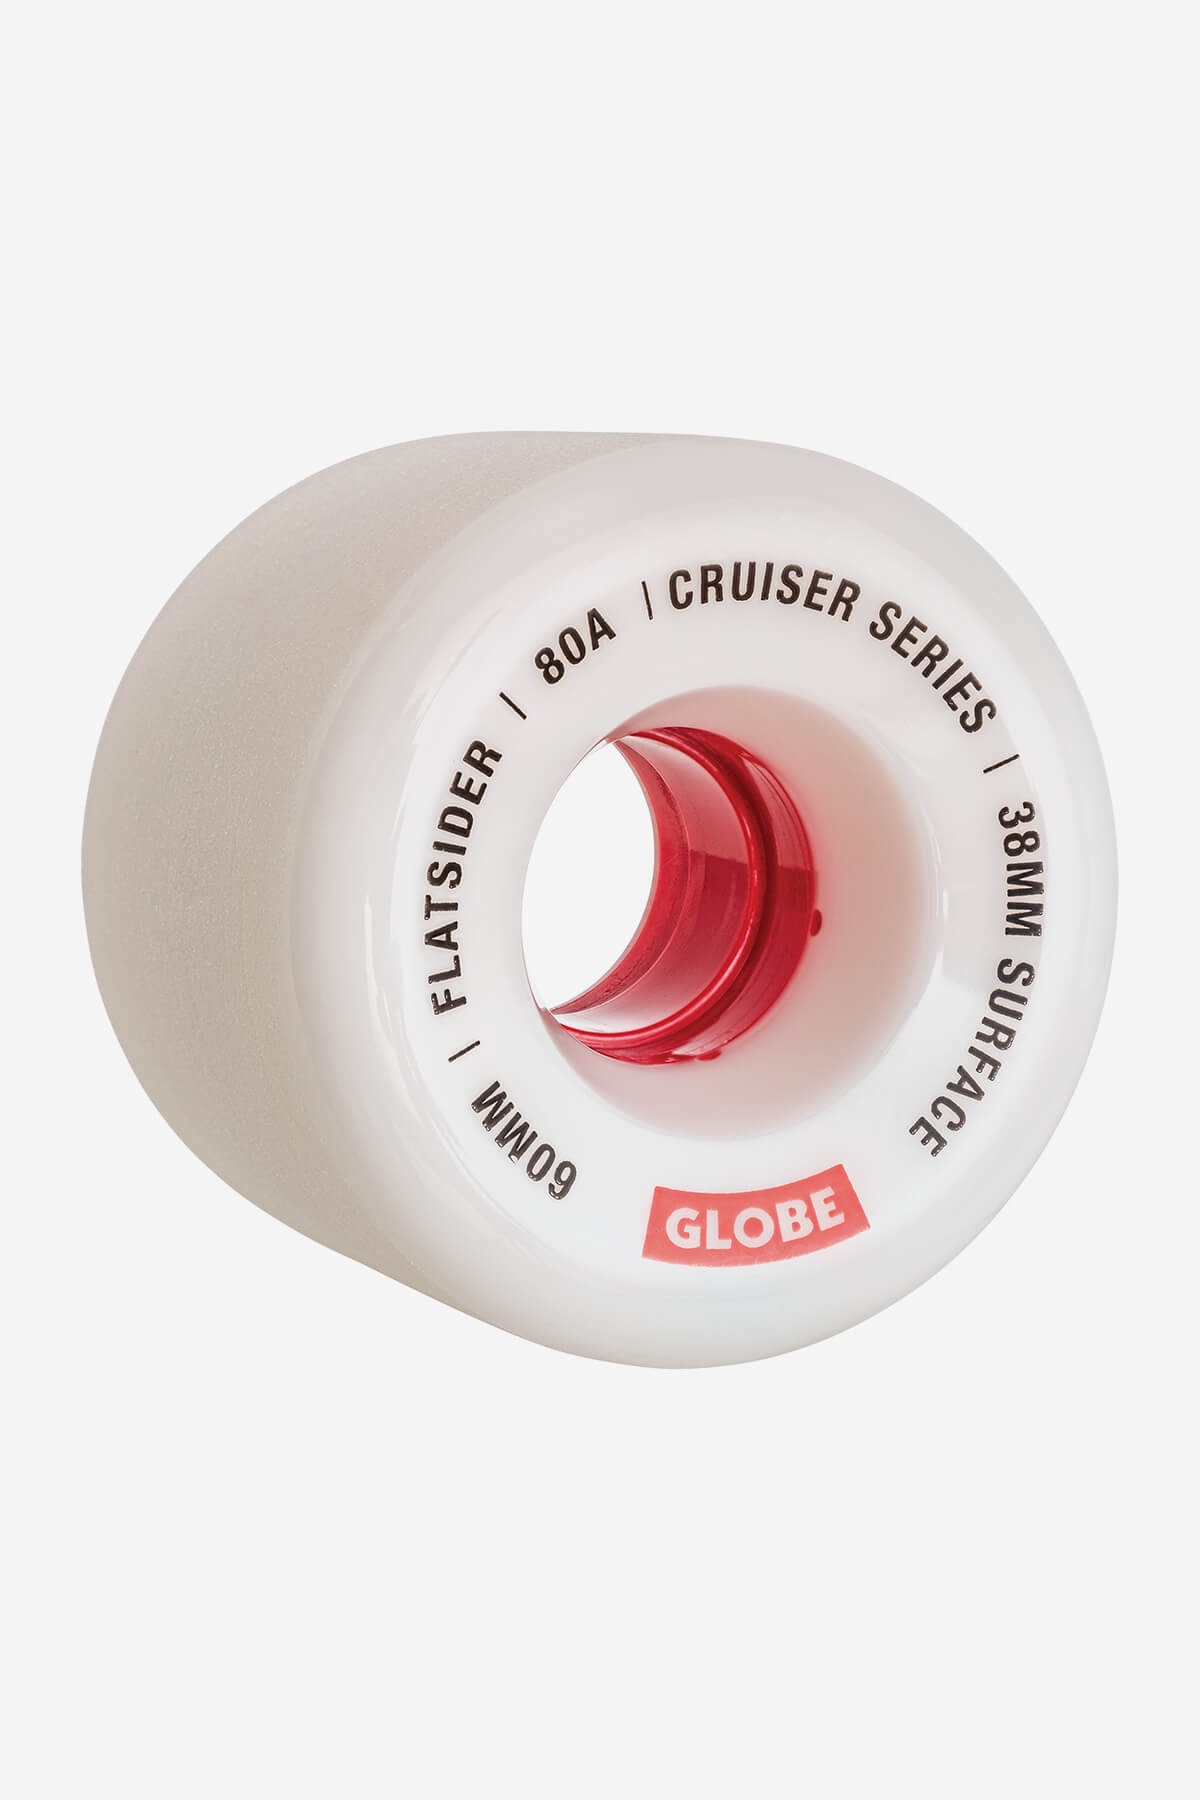 Globe Rollen Flatsider Cruiser Skateboard  Wheel  60mm in White/Red